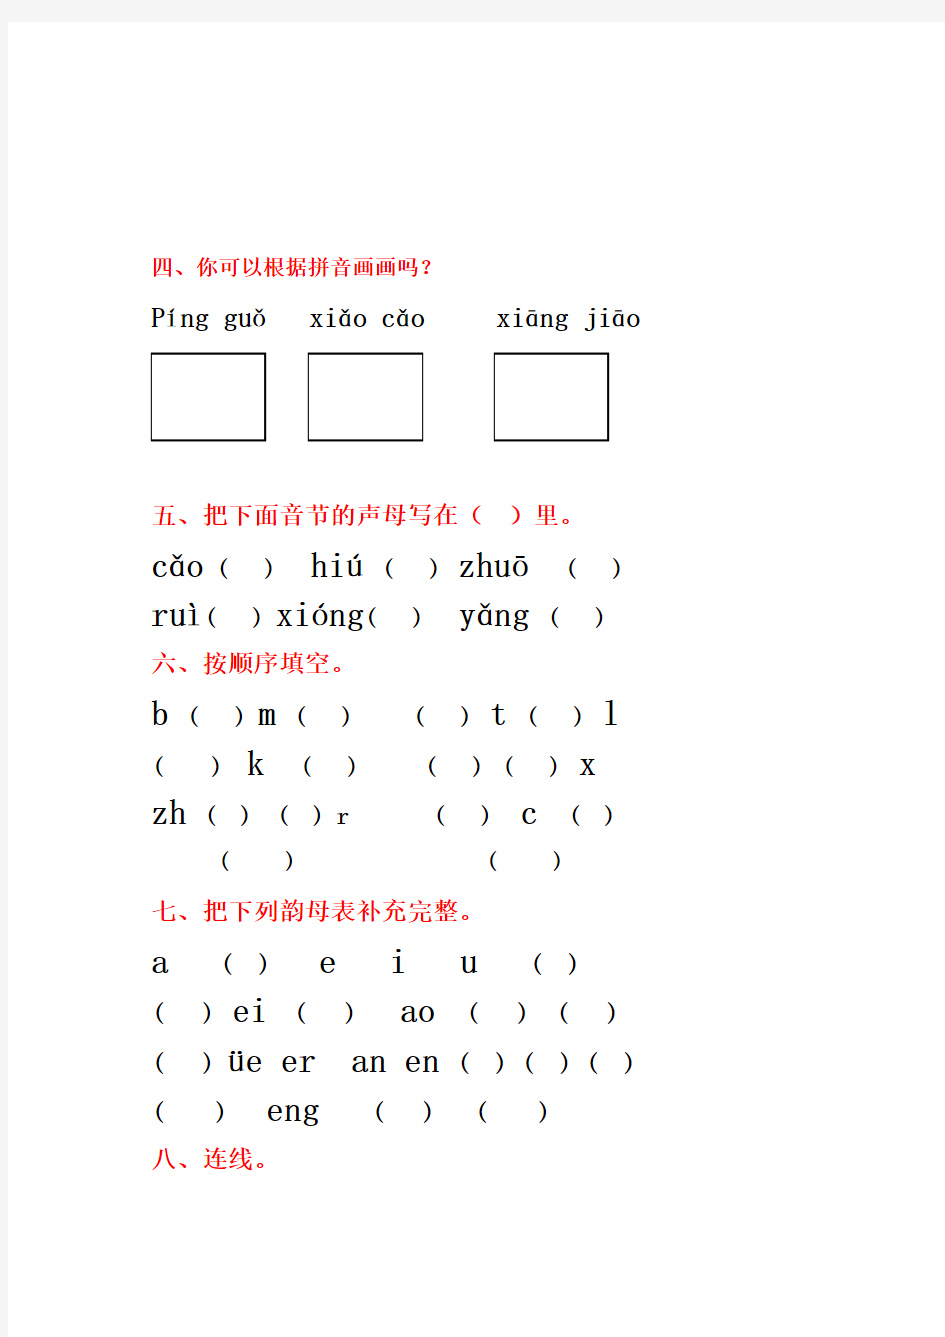 (完整版)小学一年级汉语拼音基础练习题(全)